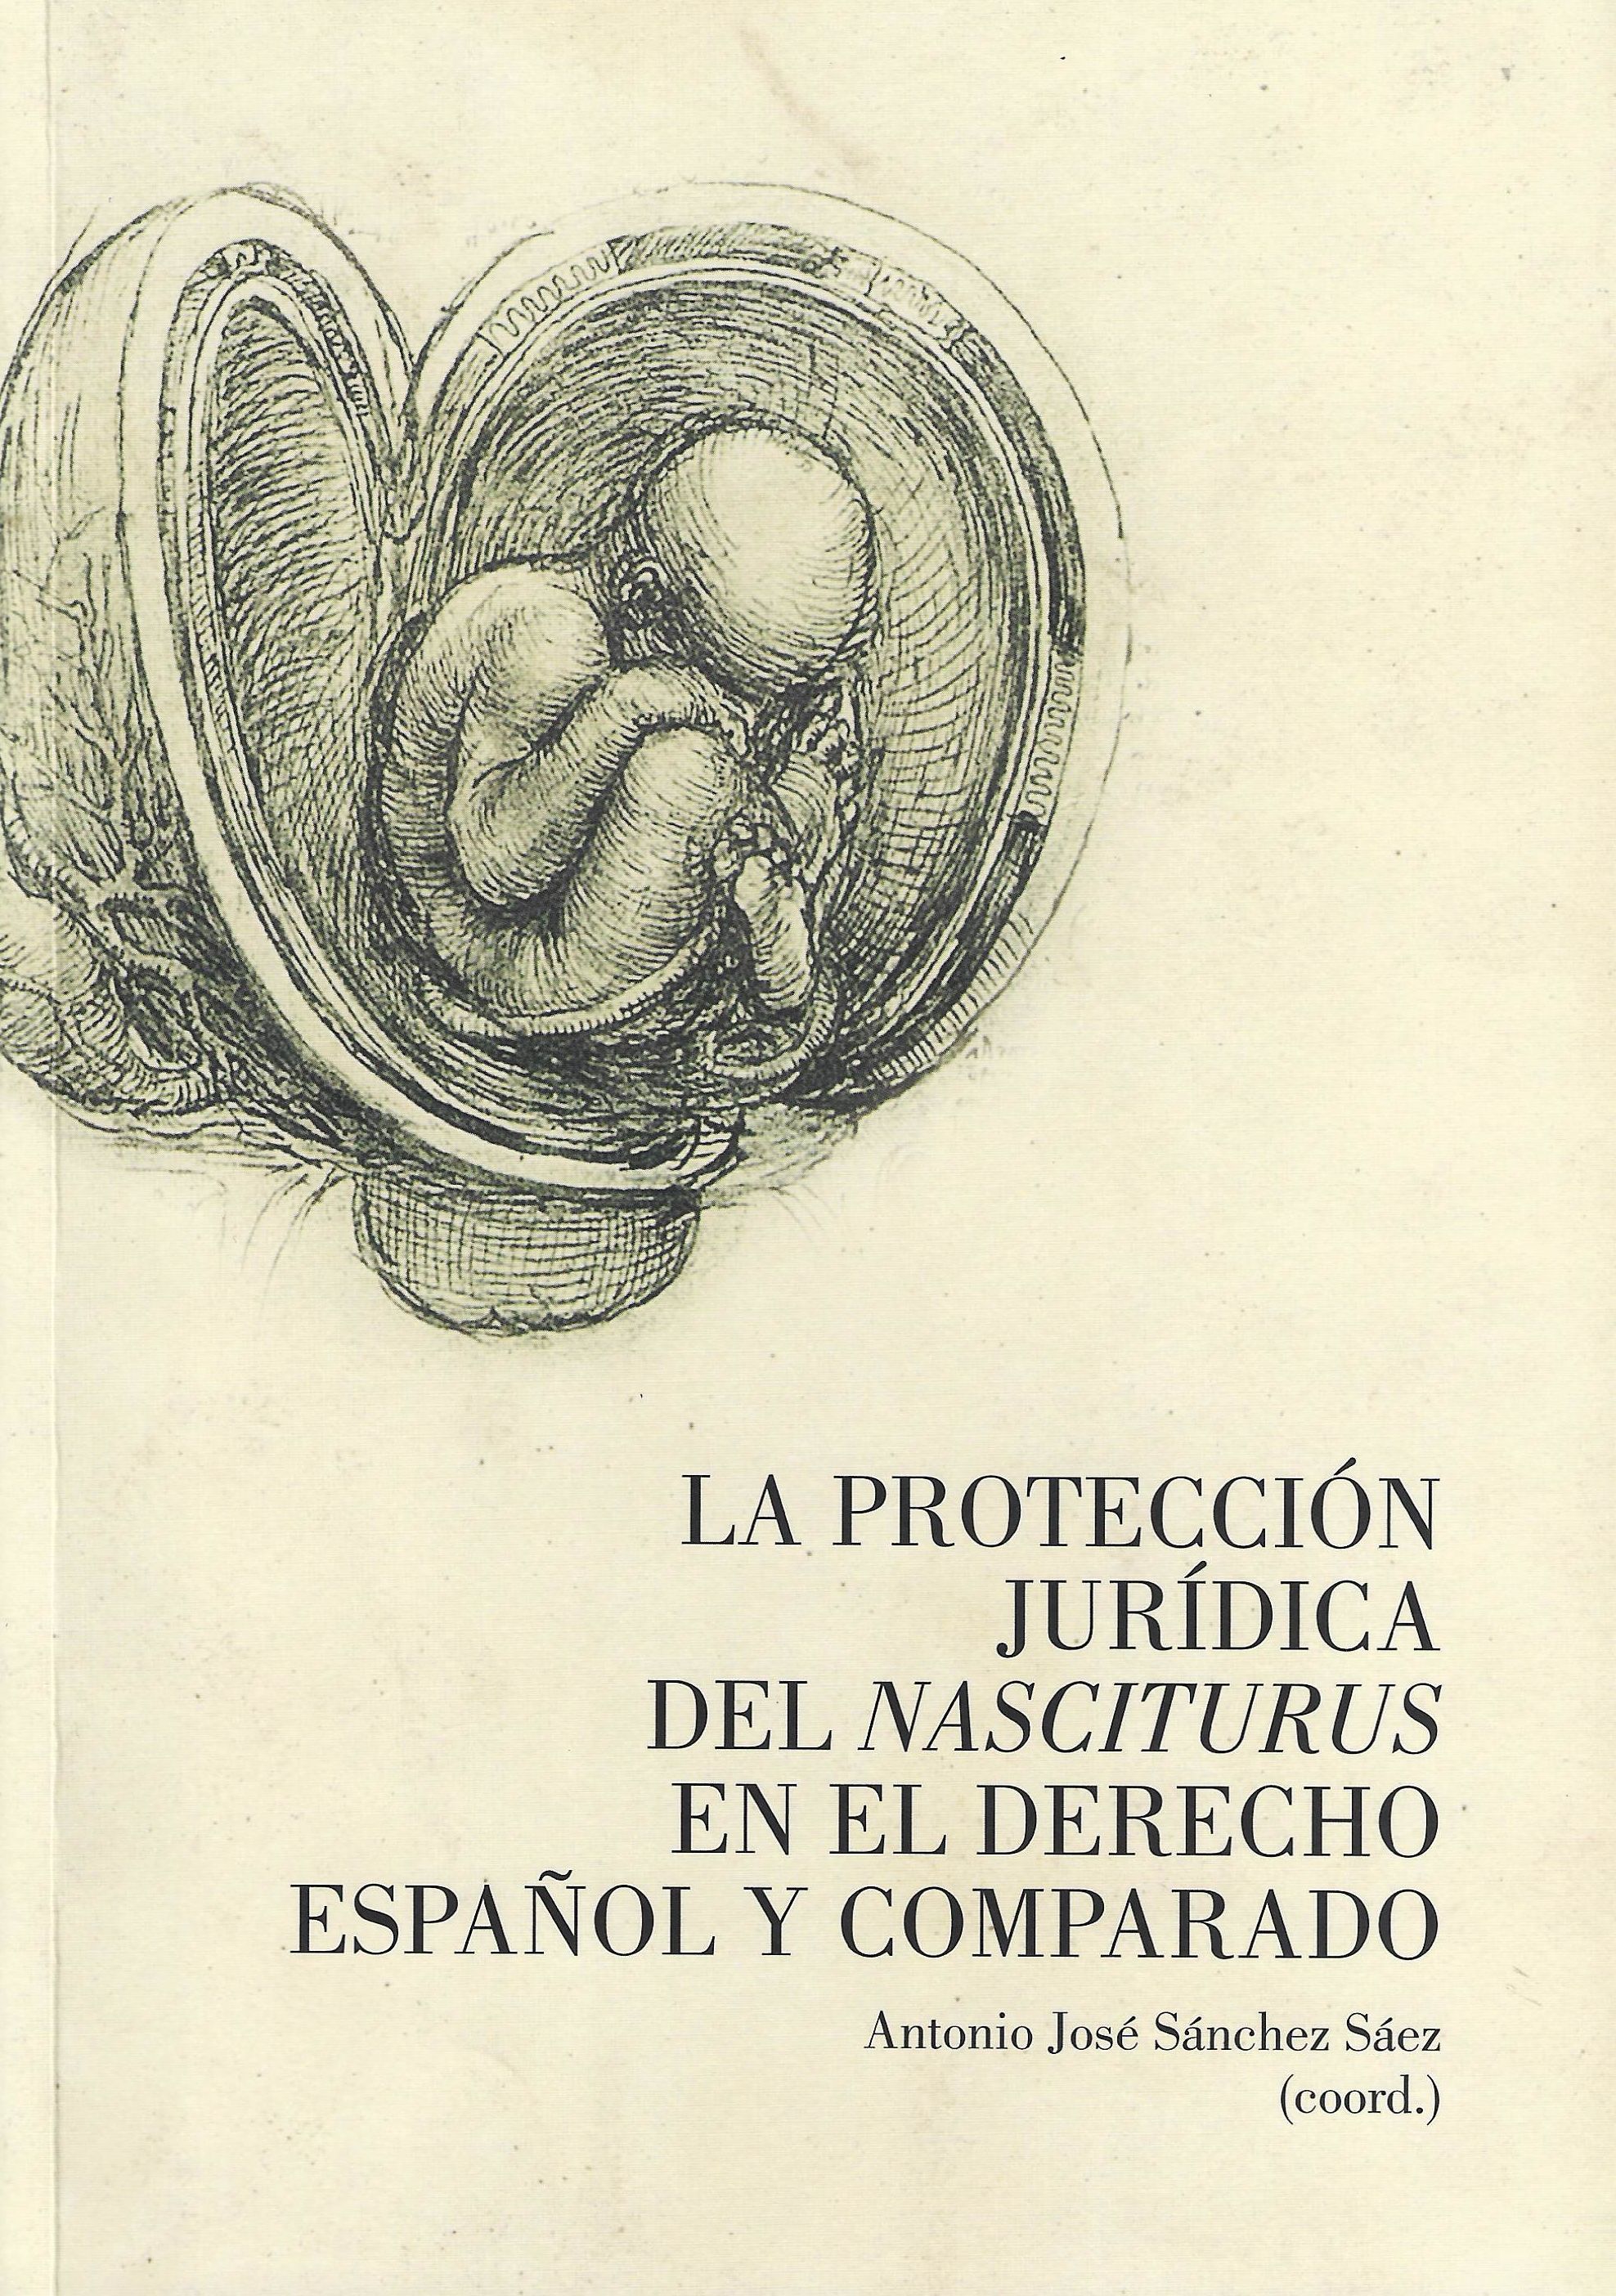 Imagen de portada del libro La protección jurídica del nasciturus en el derecho español y comparado